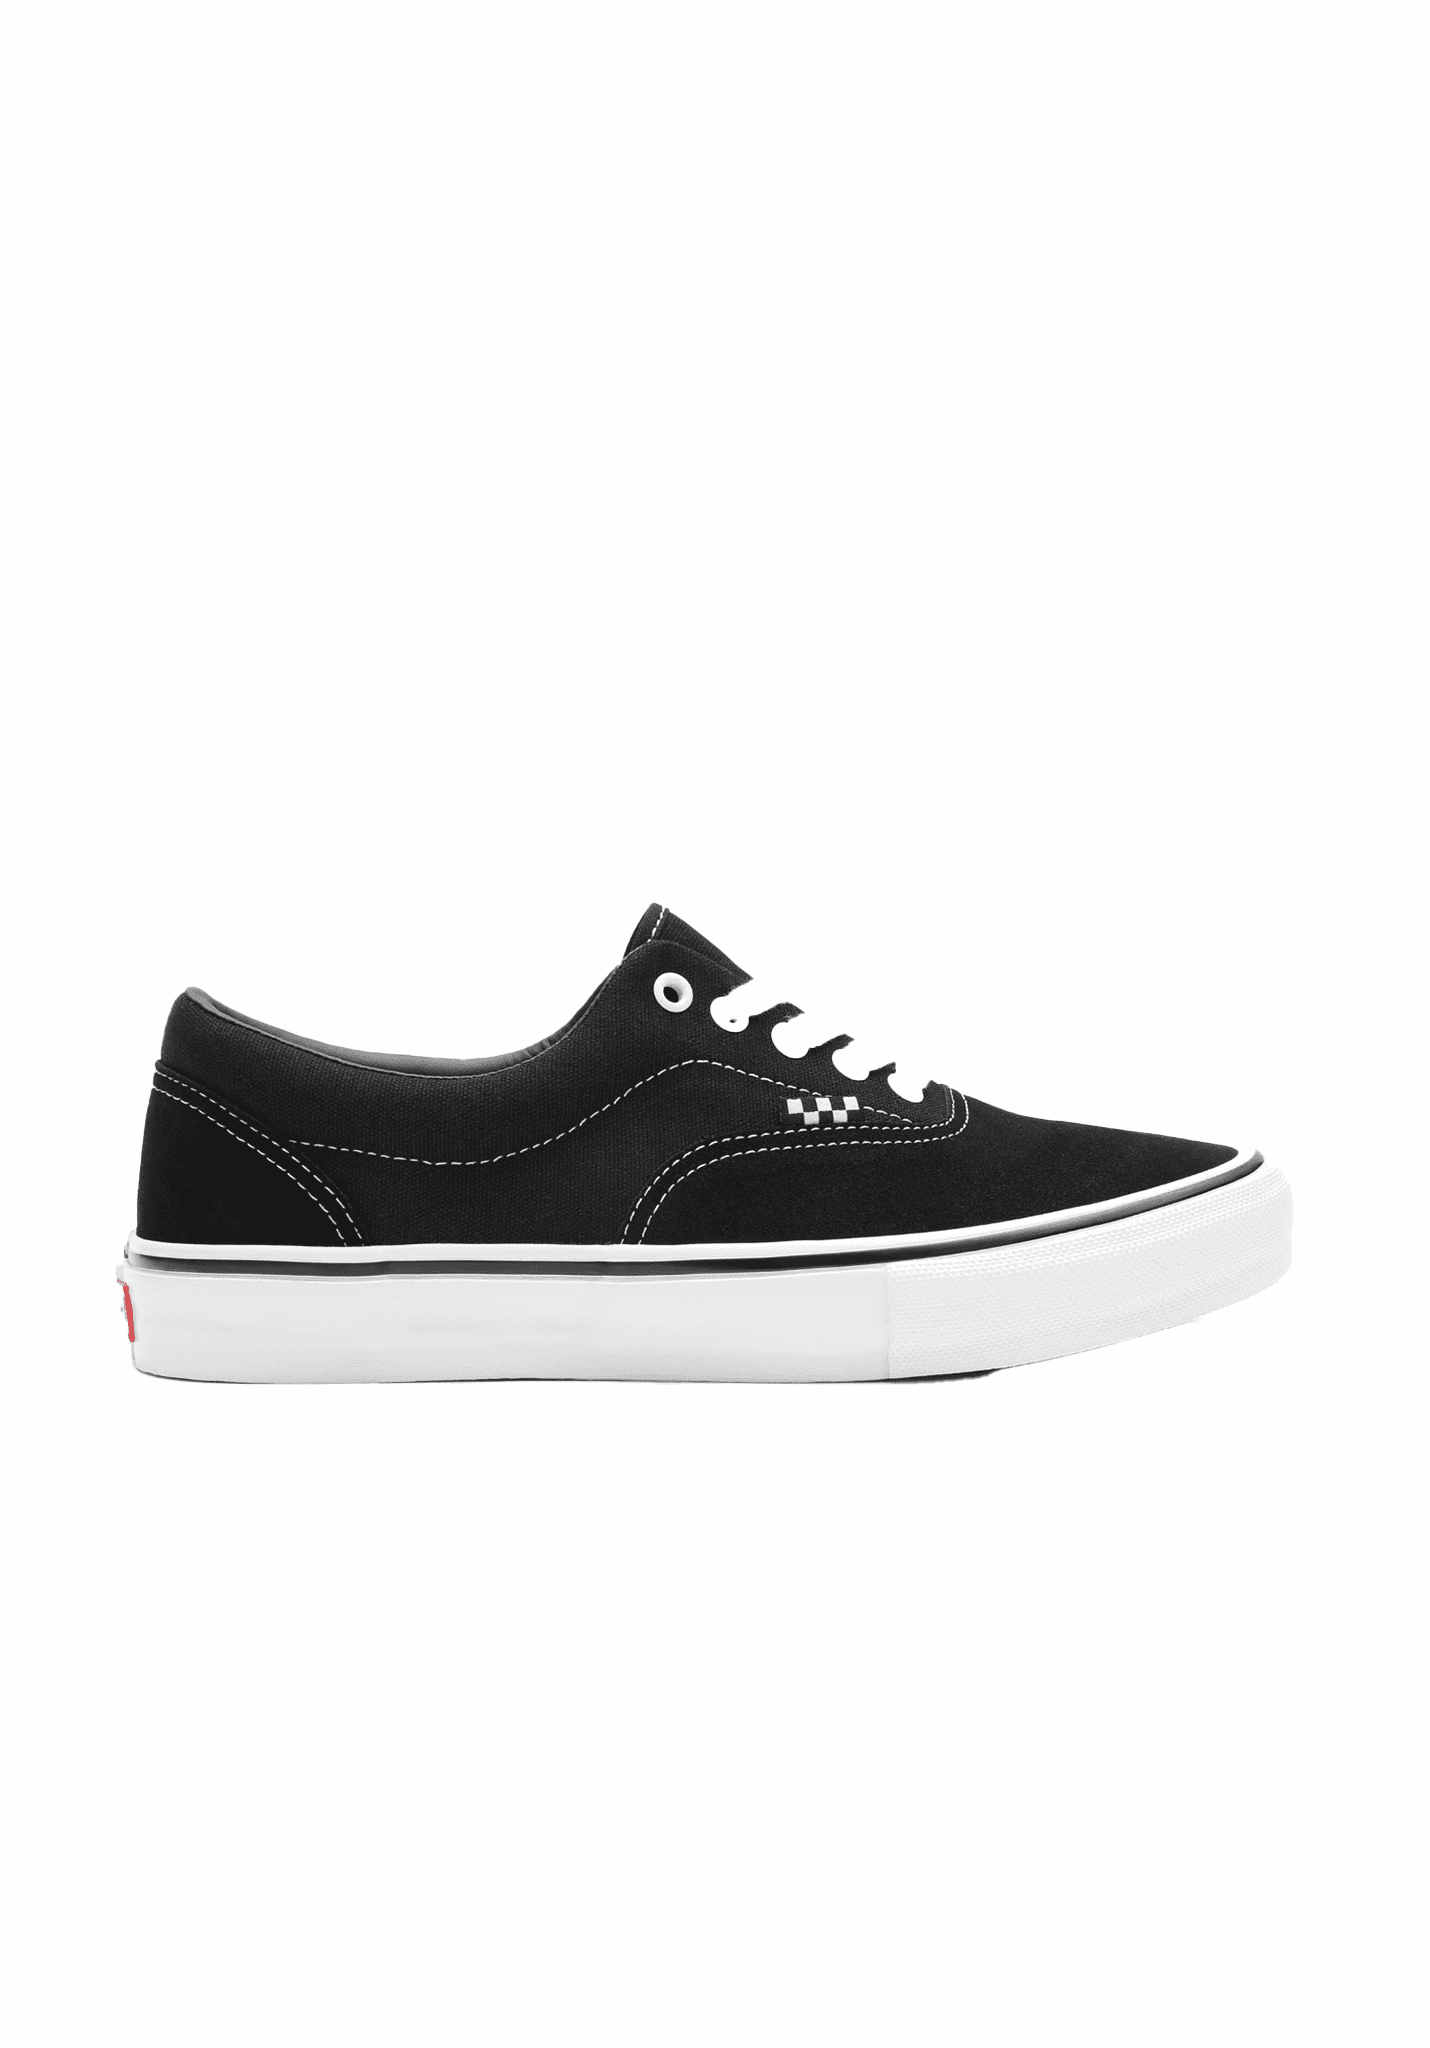 Vans Skate Era Skateschuhe black-white 45